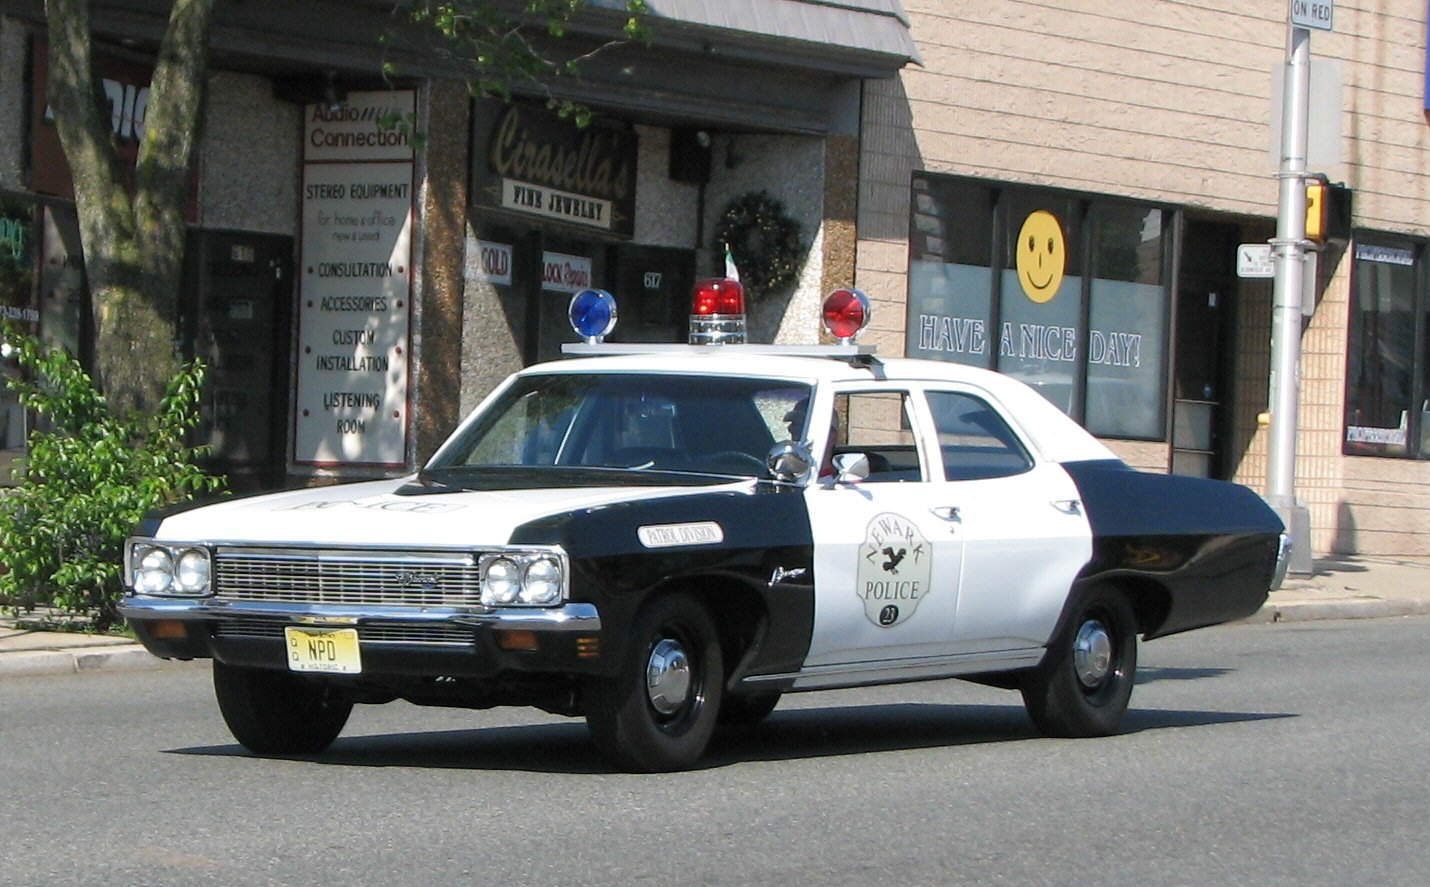 1970 Chevrolet Biscayne Newark NJ Police Carnutdk.